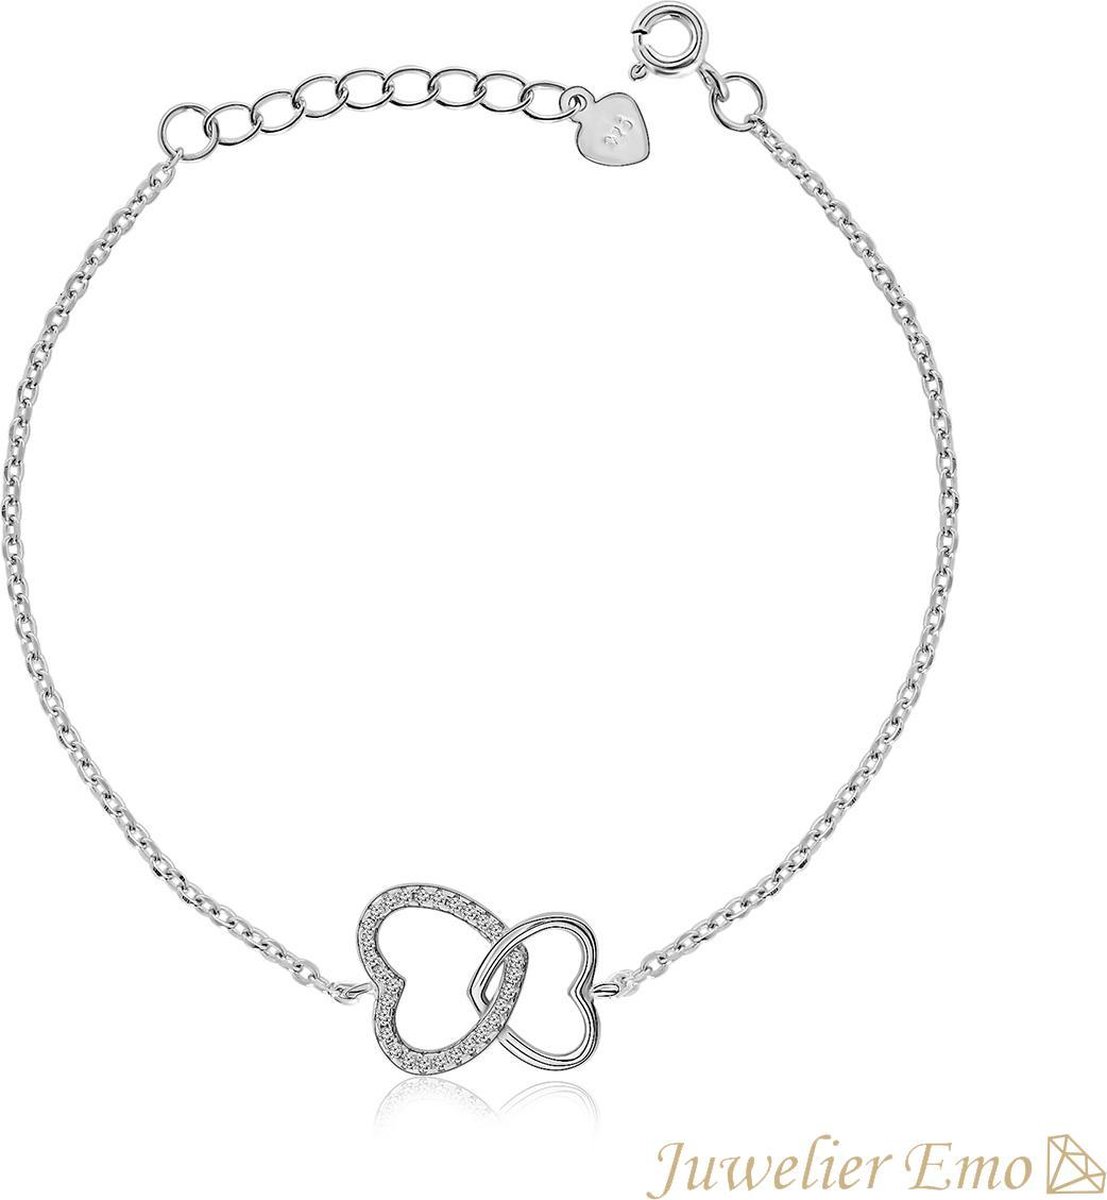 Juwelier Emo - Dubbele Hart Armband met Zirkonia's - Zilveren Armband Dames - LENGTE 19 CM